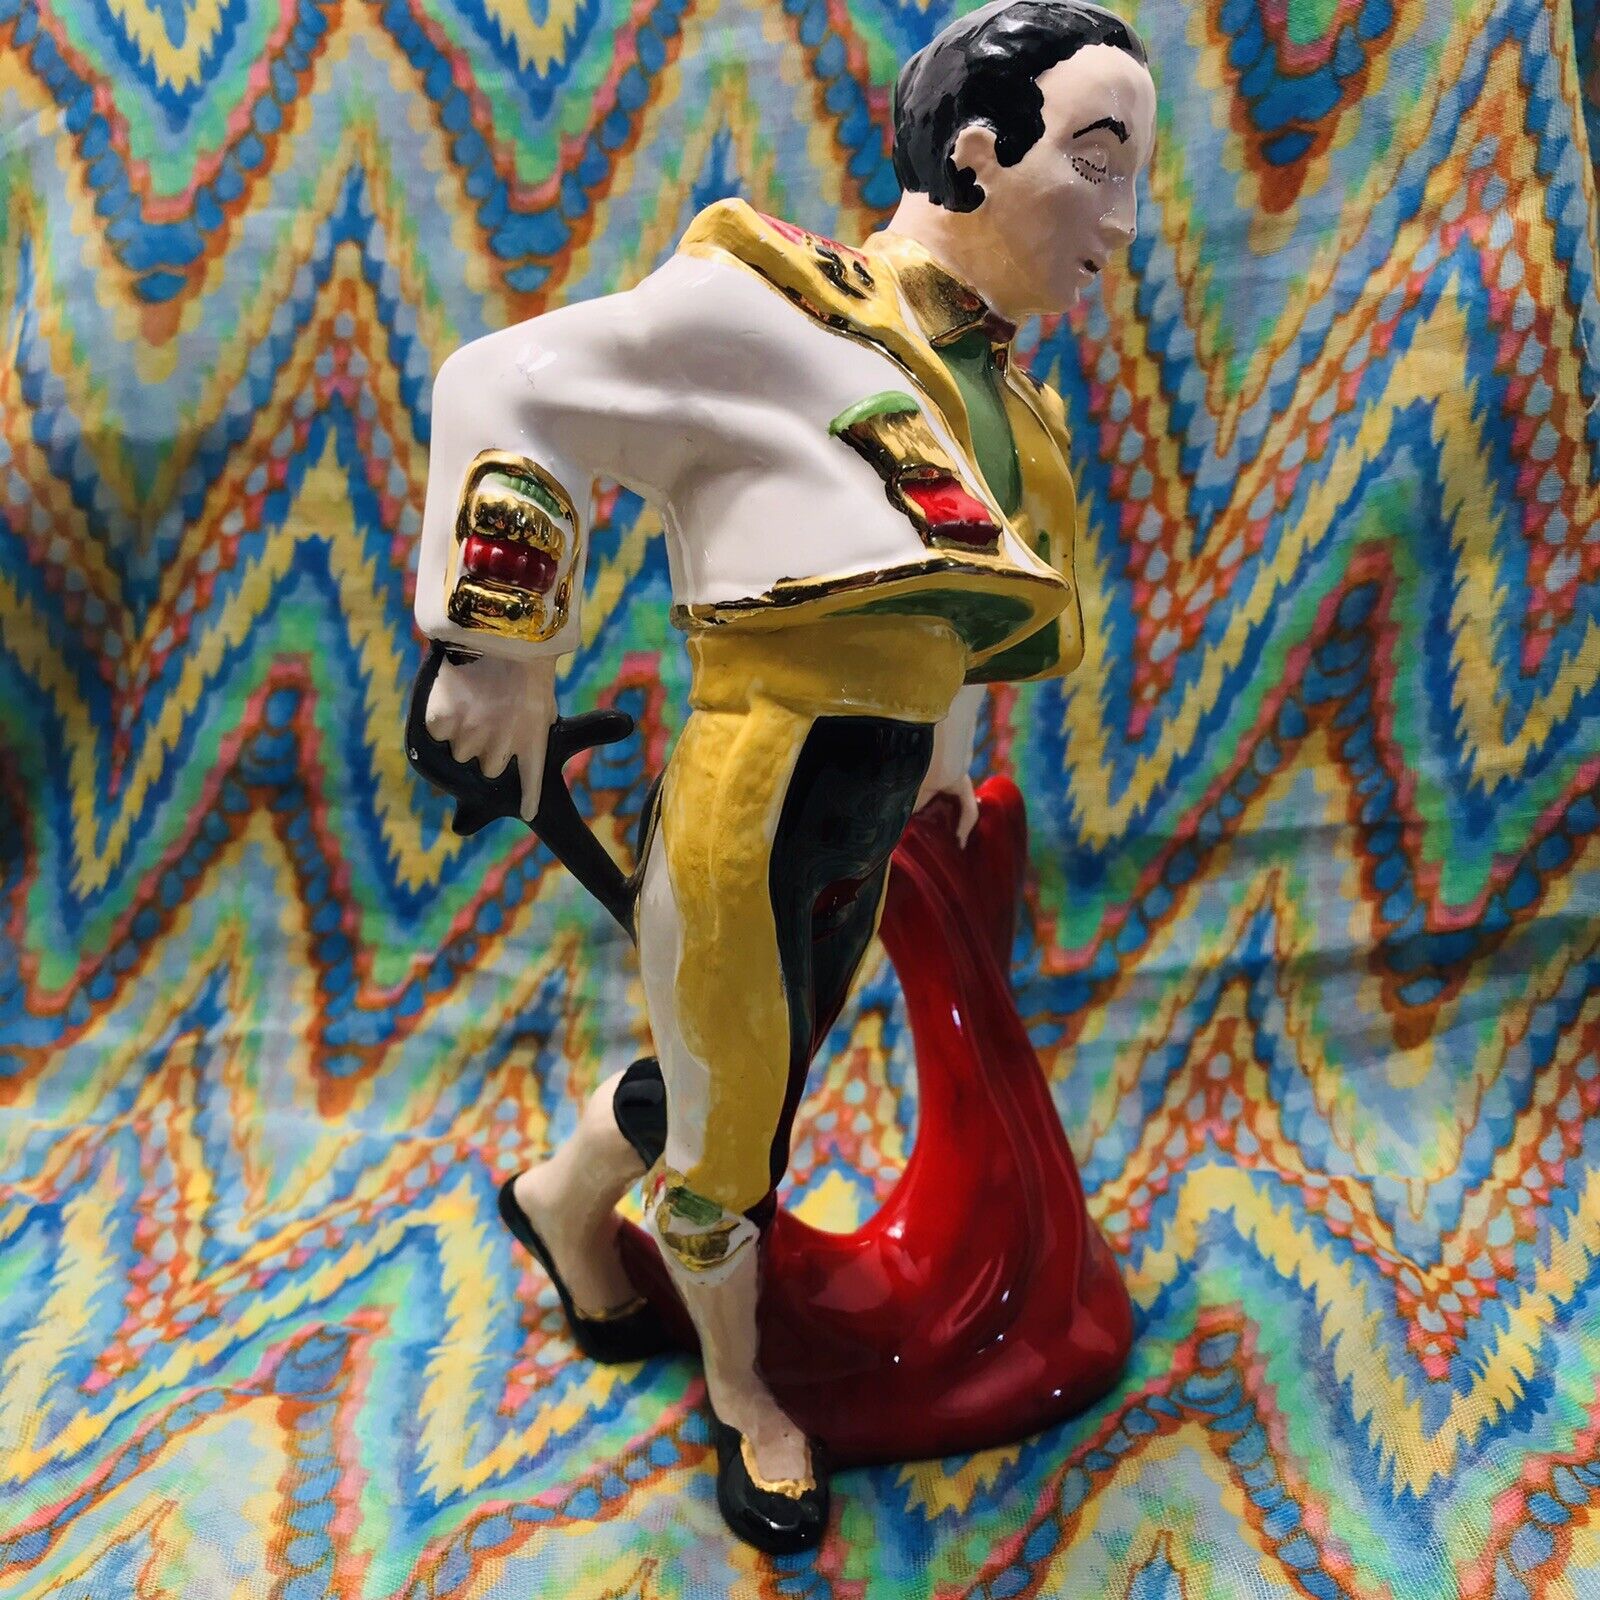 VTG Matador Bullfighting Figurine - Maker: Pleasant day￼ & Init, Bullfighter